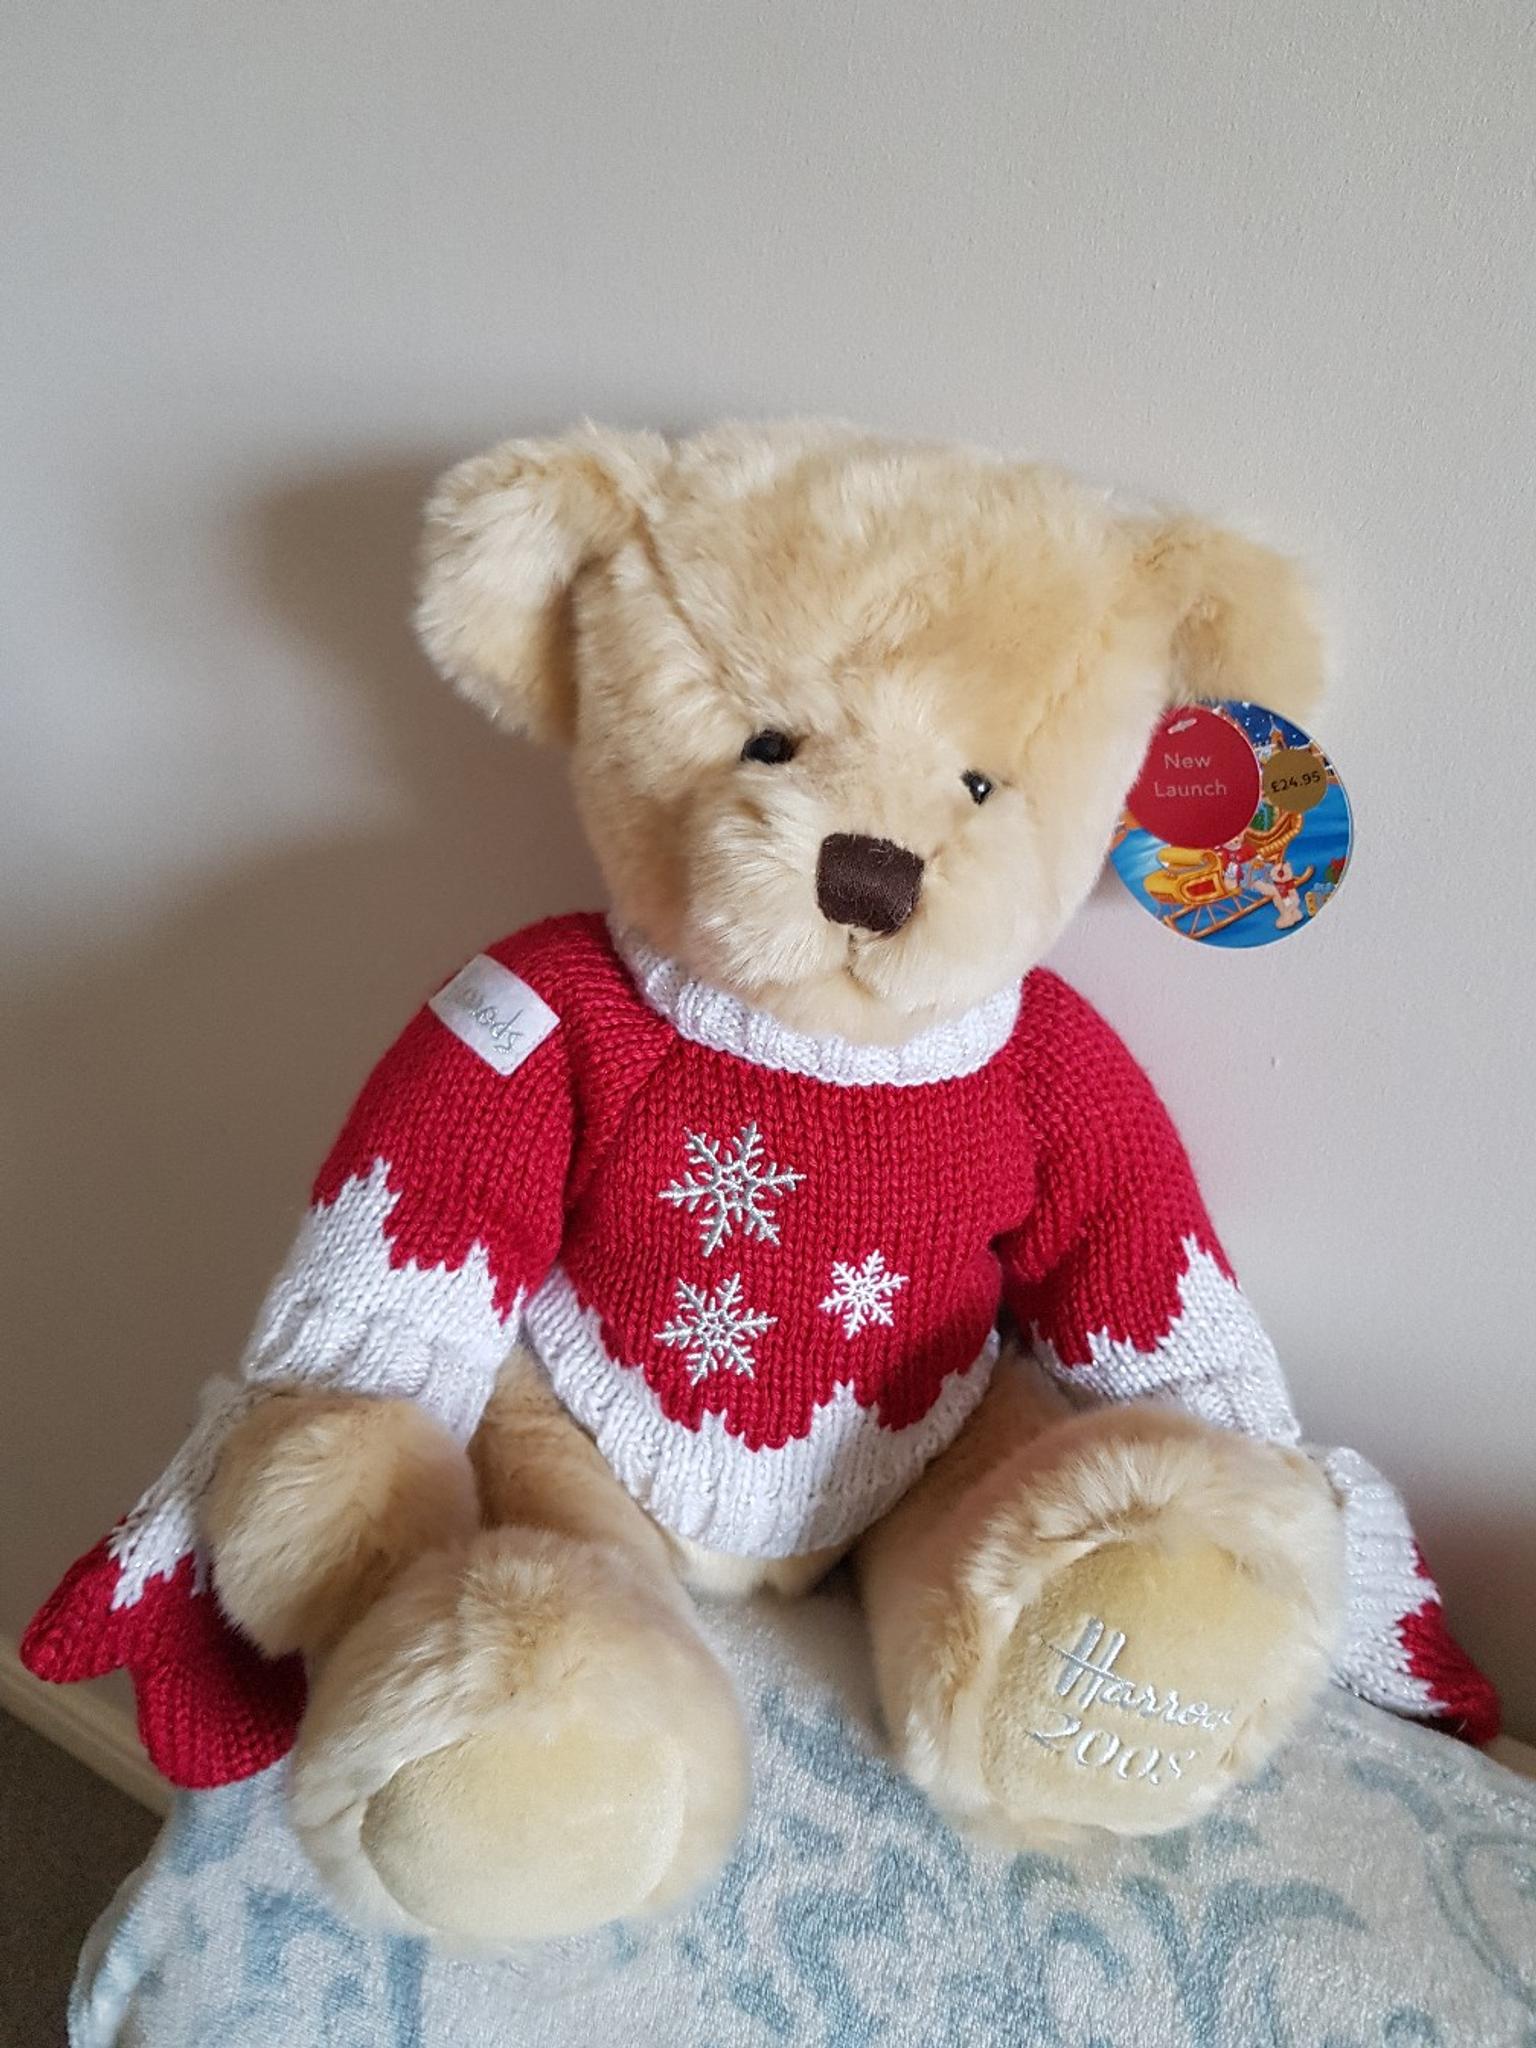 harrods teddy bears 2018